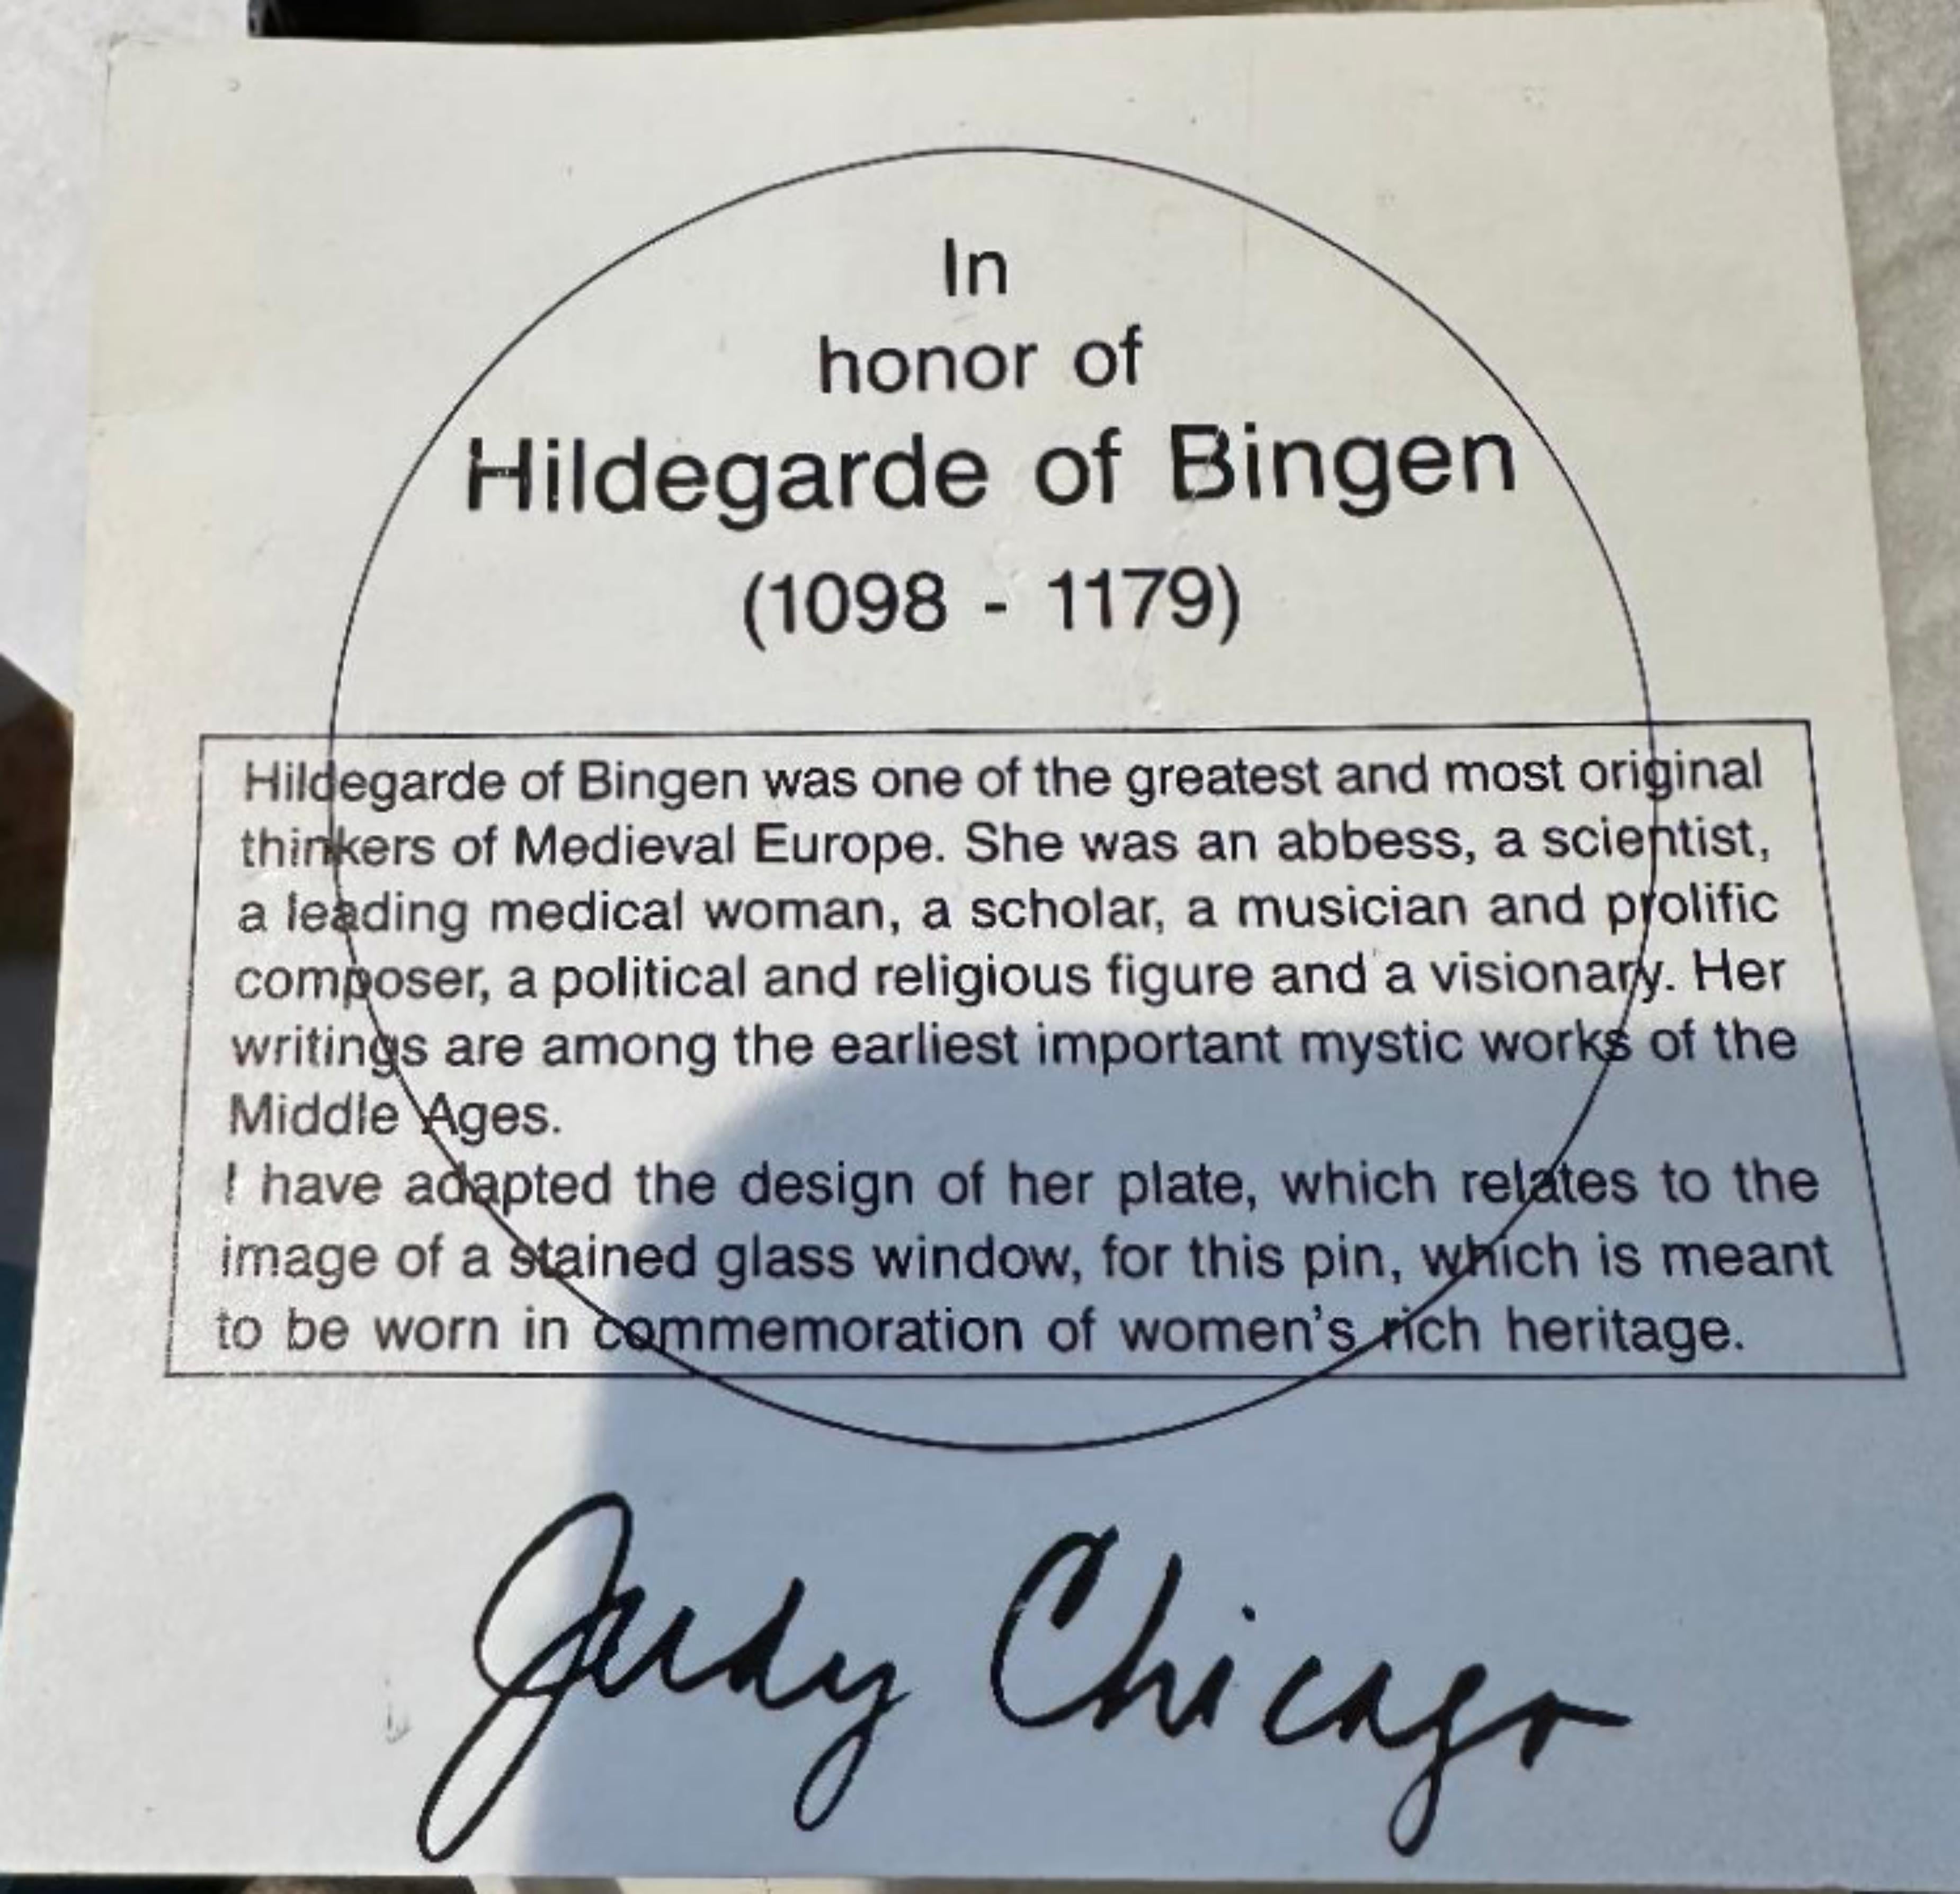 Judy Chicago
Cloisonne-Brosche der Hildegard von Bingen aus The Dinner Party, 1987
Cloisonne-Brosche/Anstecknadel mit Verschluss auf der Rückseite und Judy Chicagos eingeritzter Signatur und Copyright
2 im Durchmesser
Ritzsignatur des Künstlers,